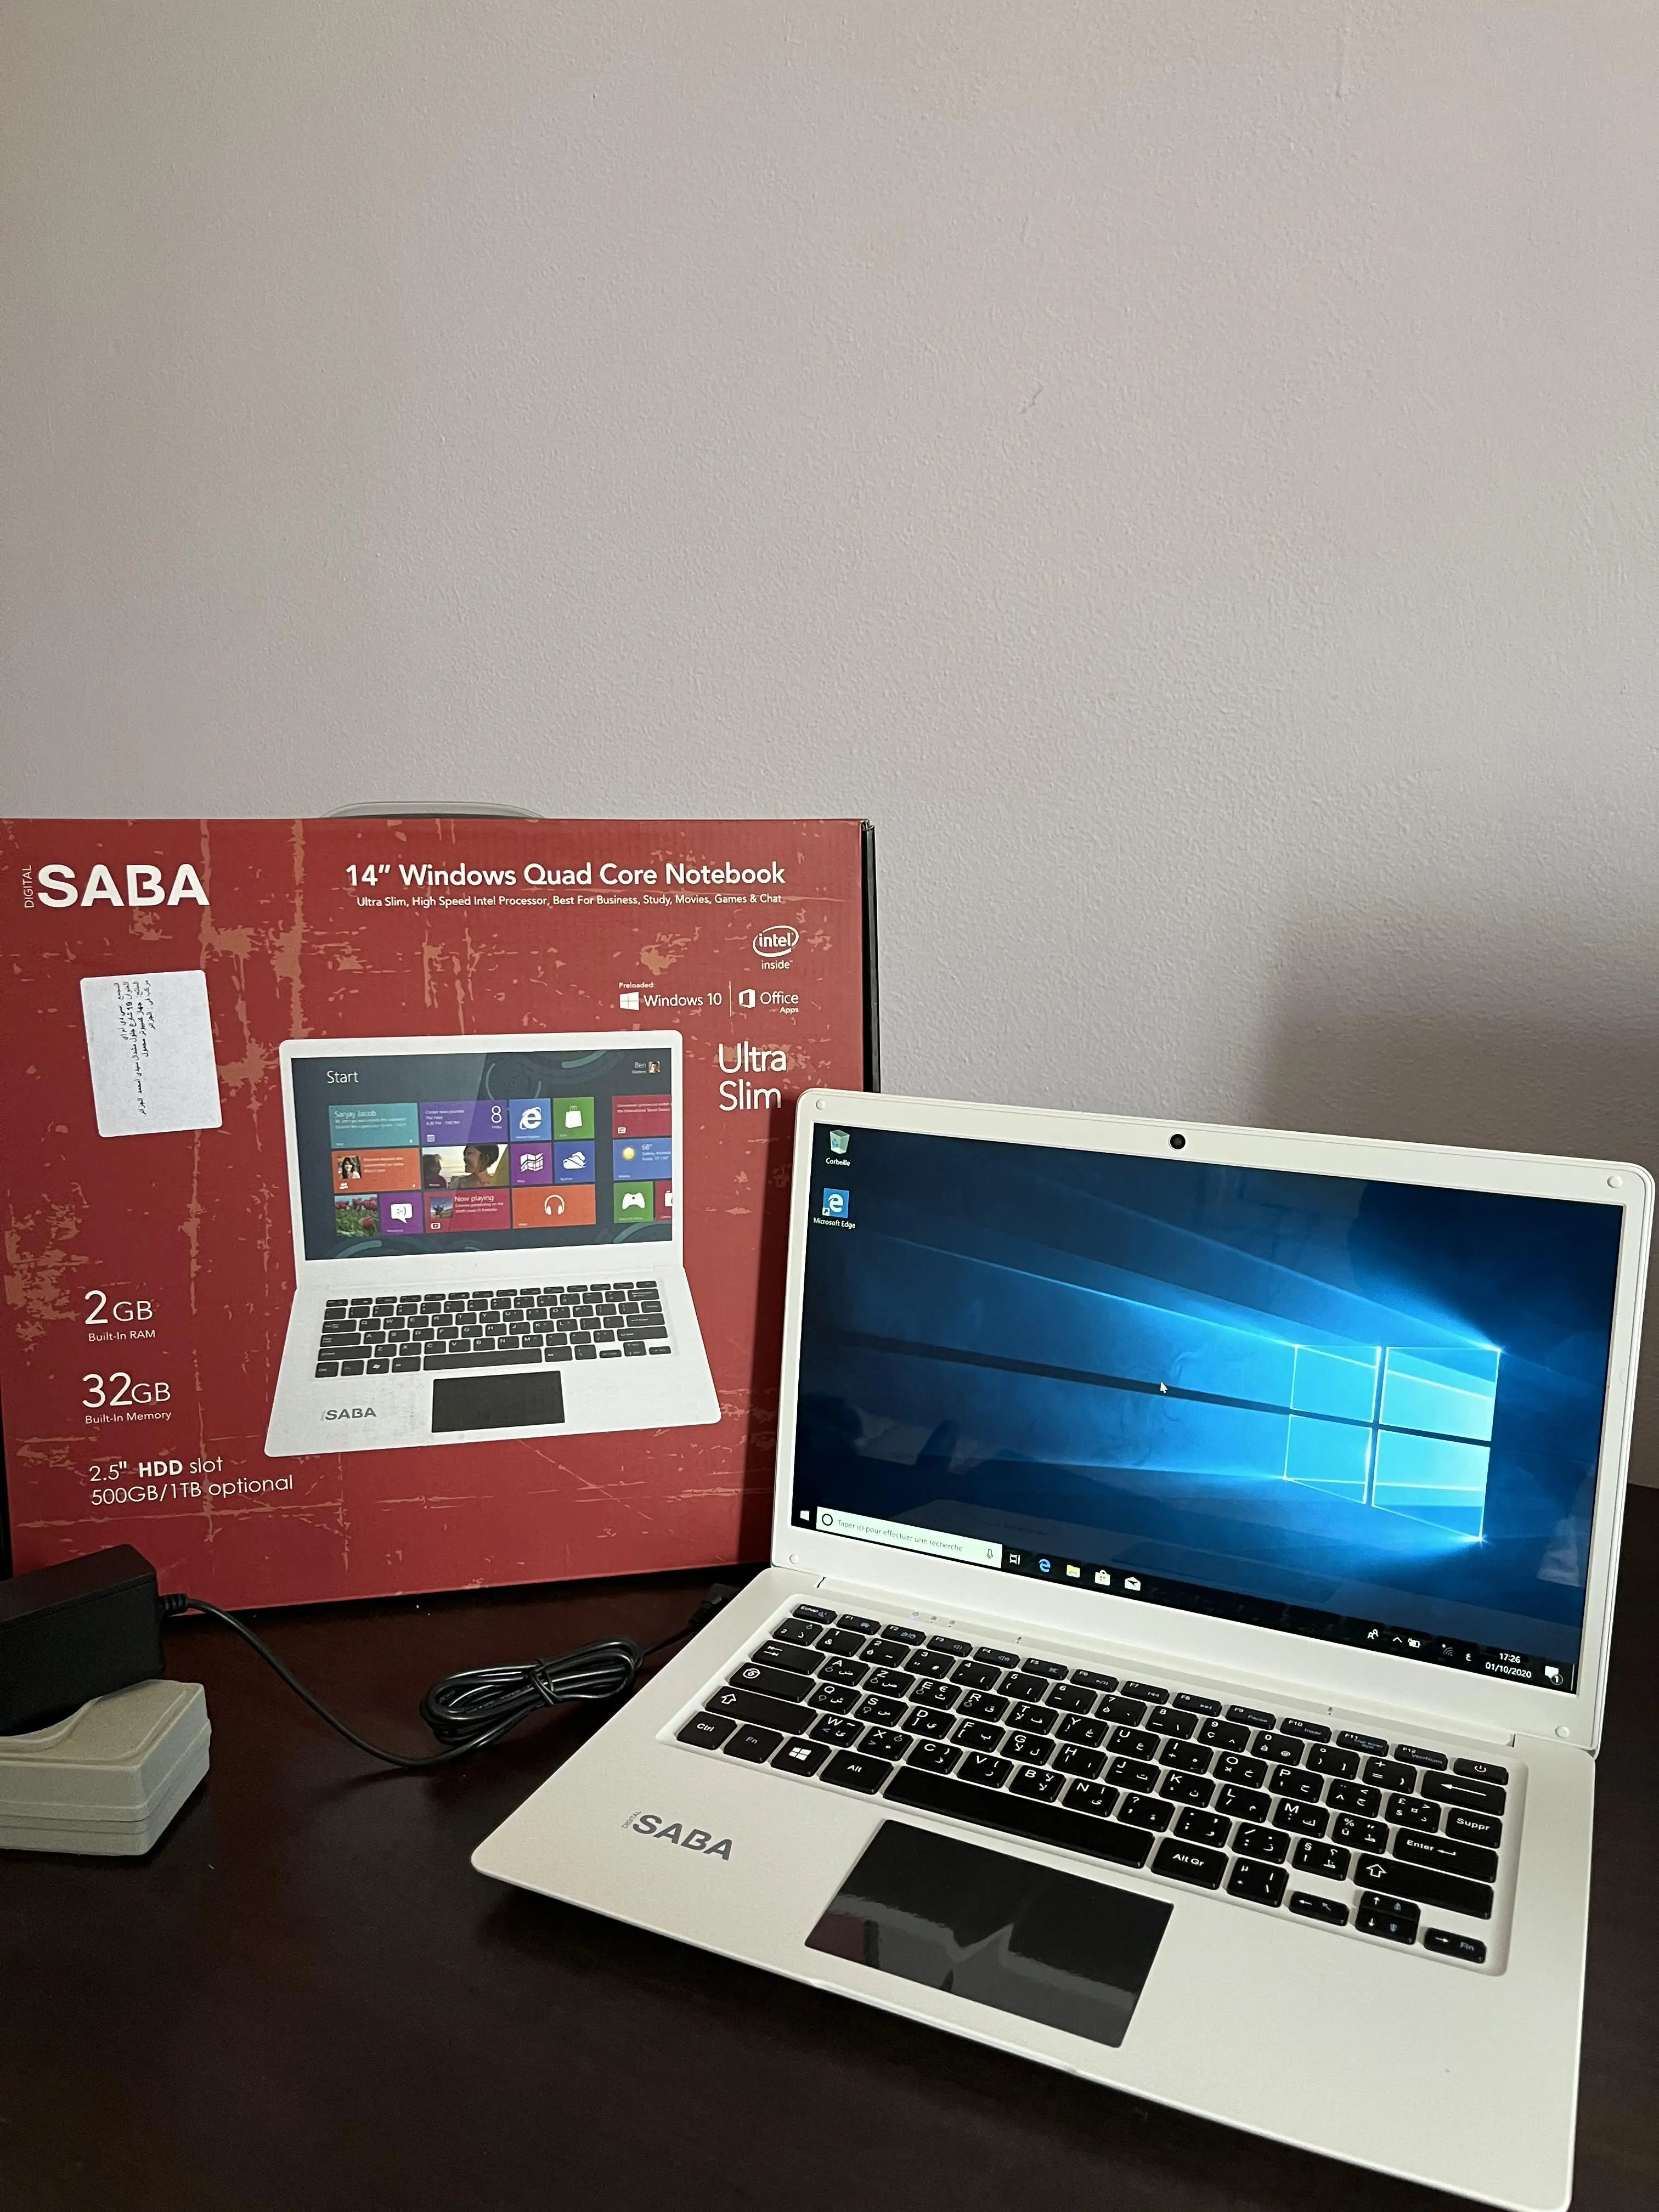 PC Portable Computer SABA حاسوب محمول neuf جديد SASHOPDZ